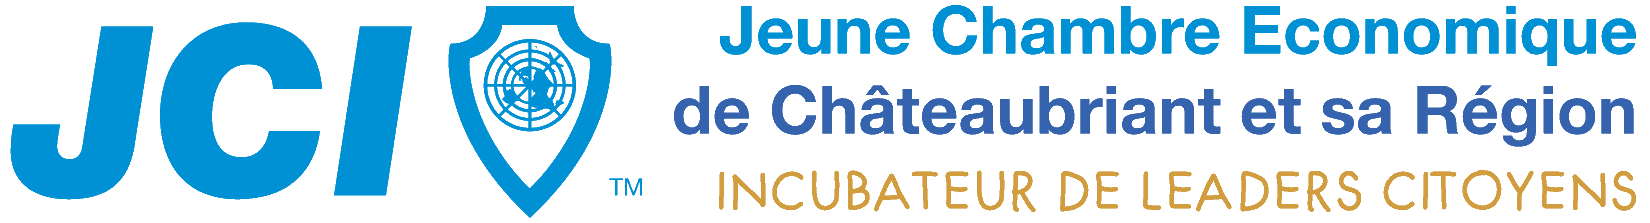 Jeune Chambre Economique de Châteaubriant et sa région